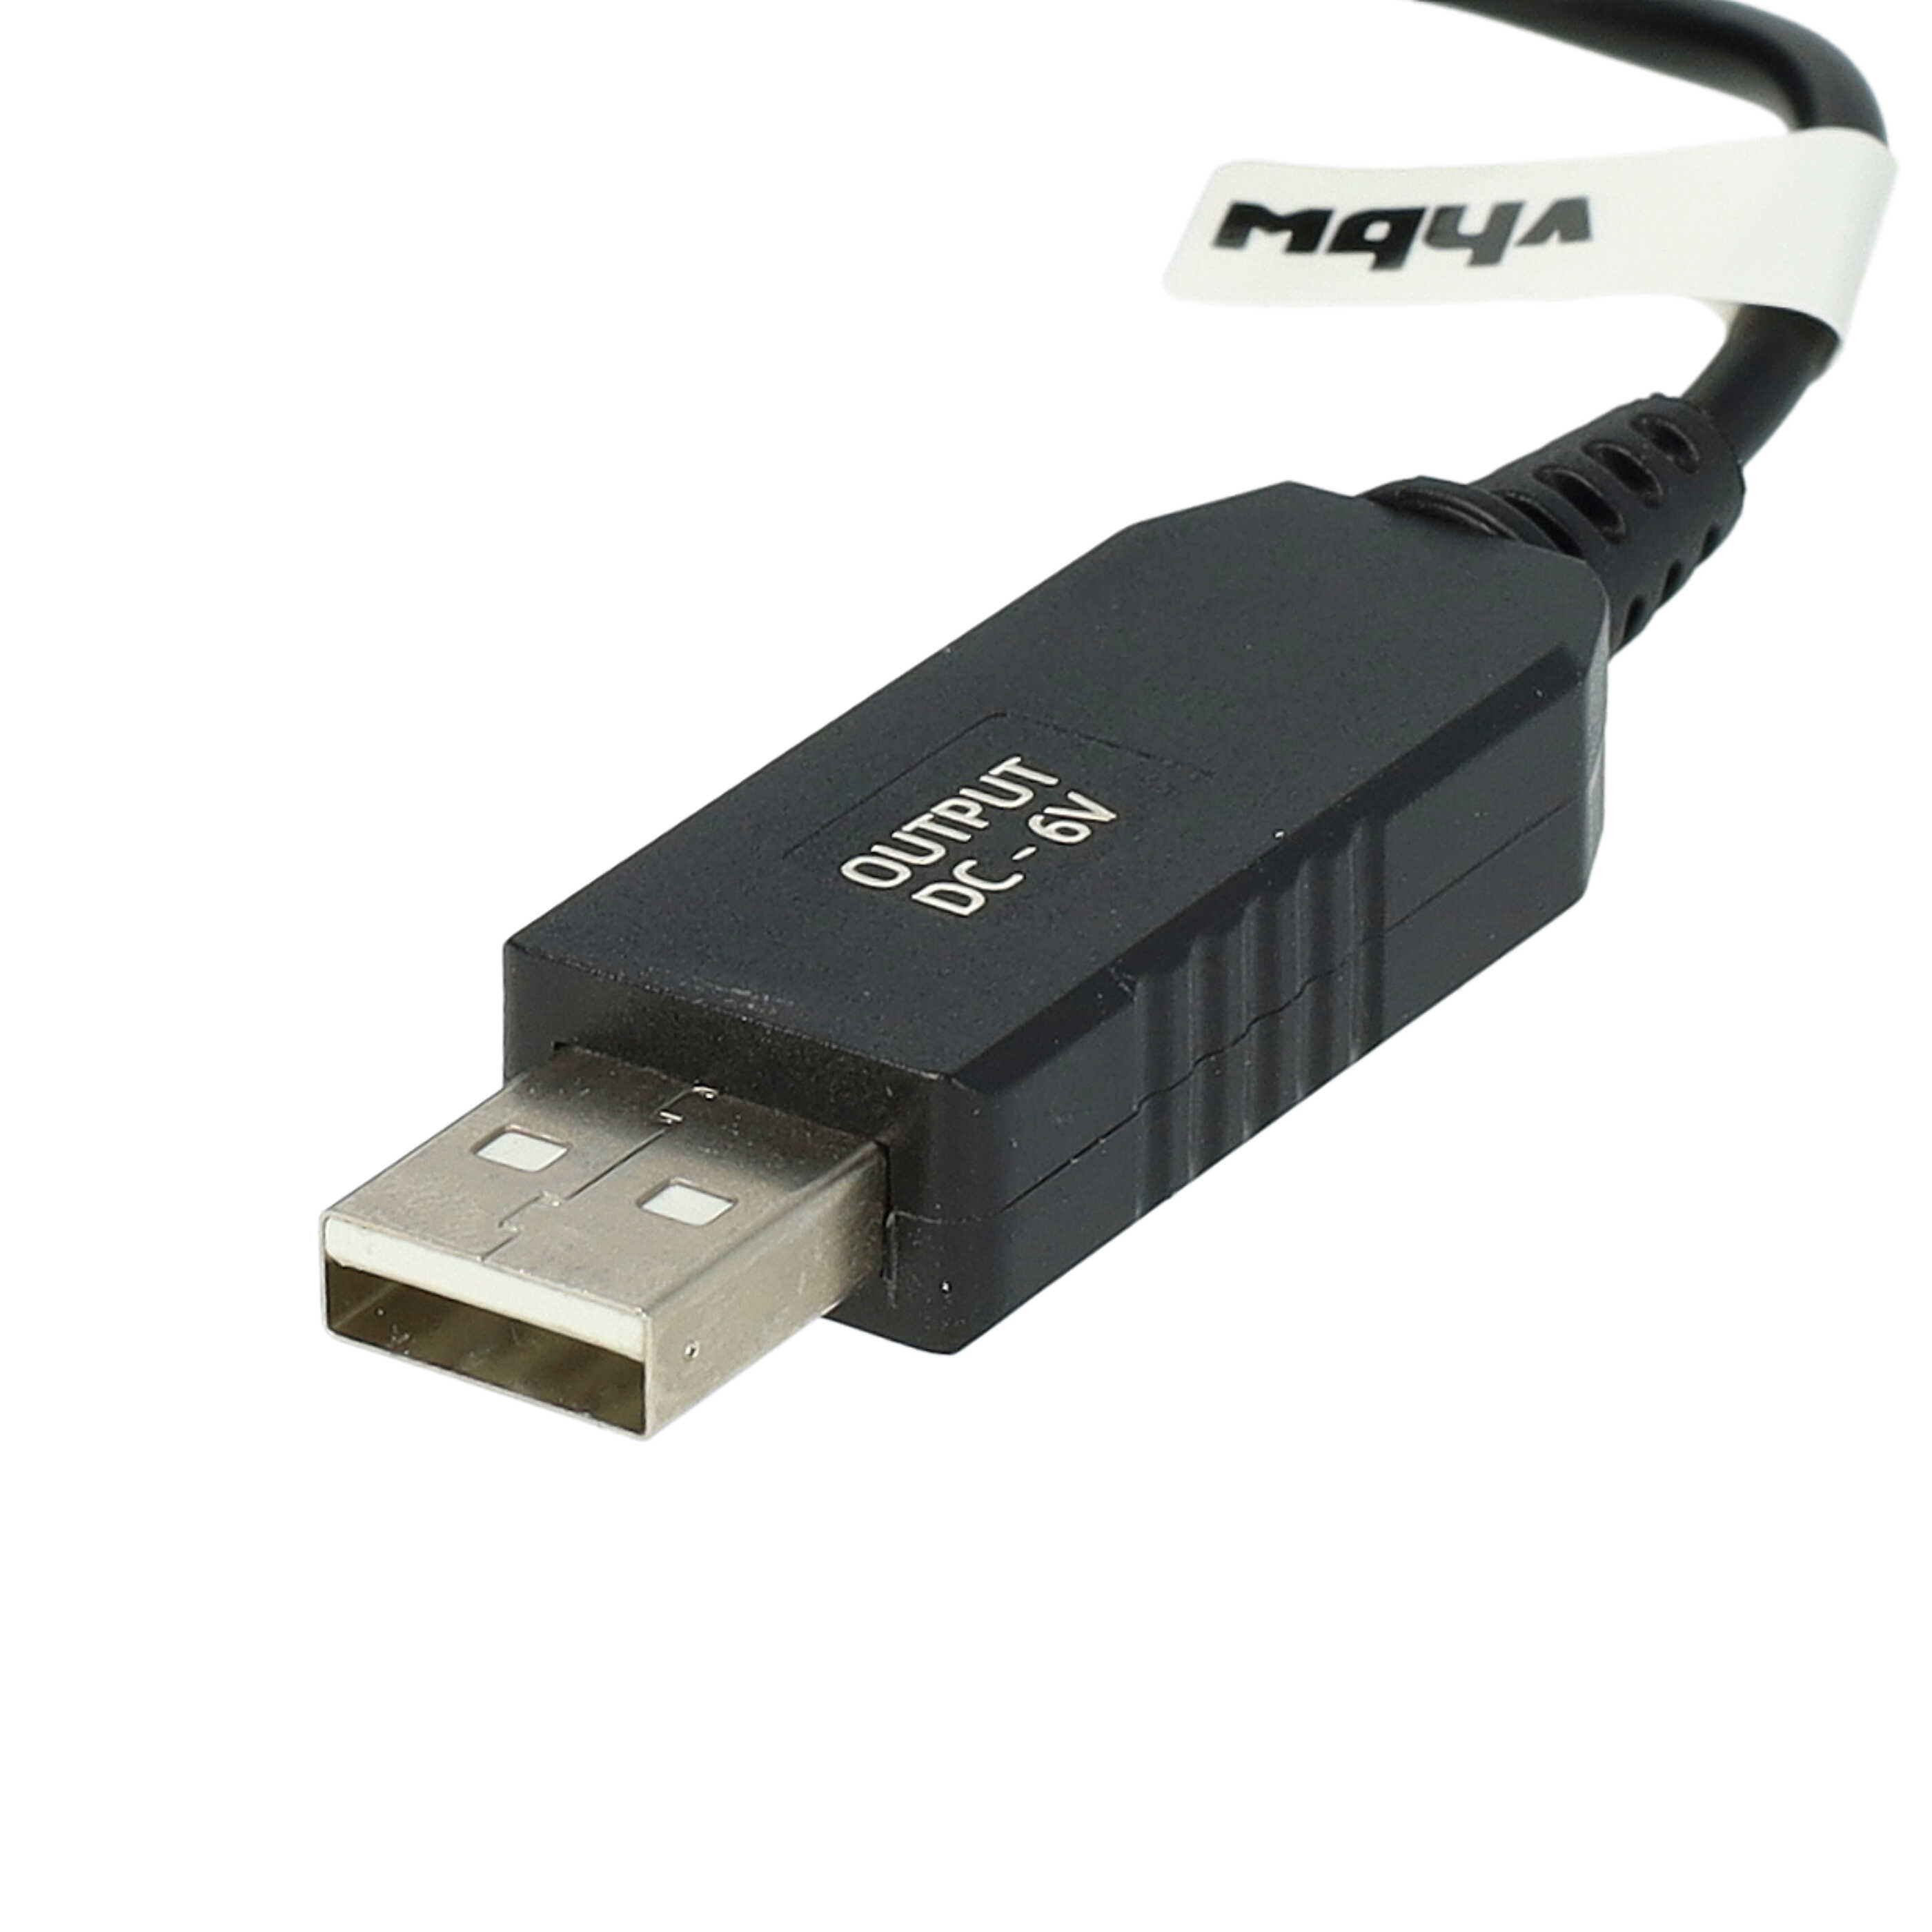 USB Ladekabel als Ersatz für Braun 491-5691, 81615618, 8161561, 81747675 für Braun Rasierer - 120 cm